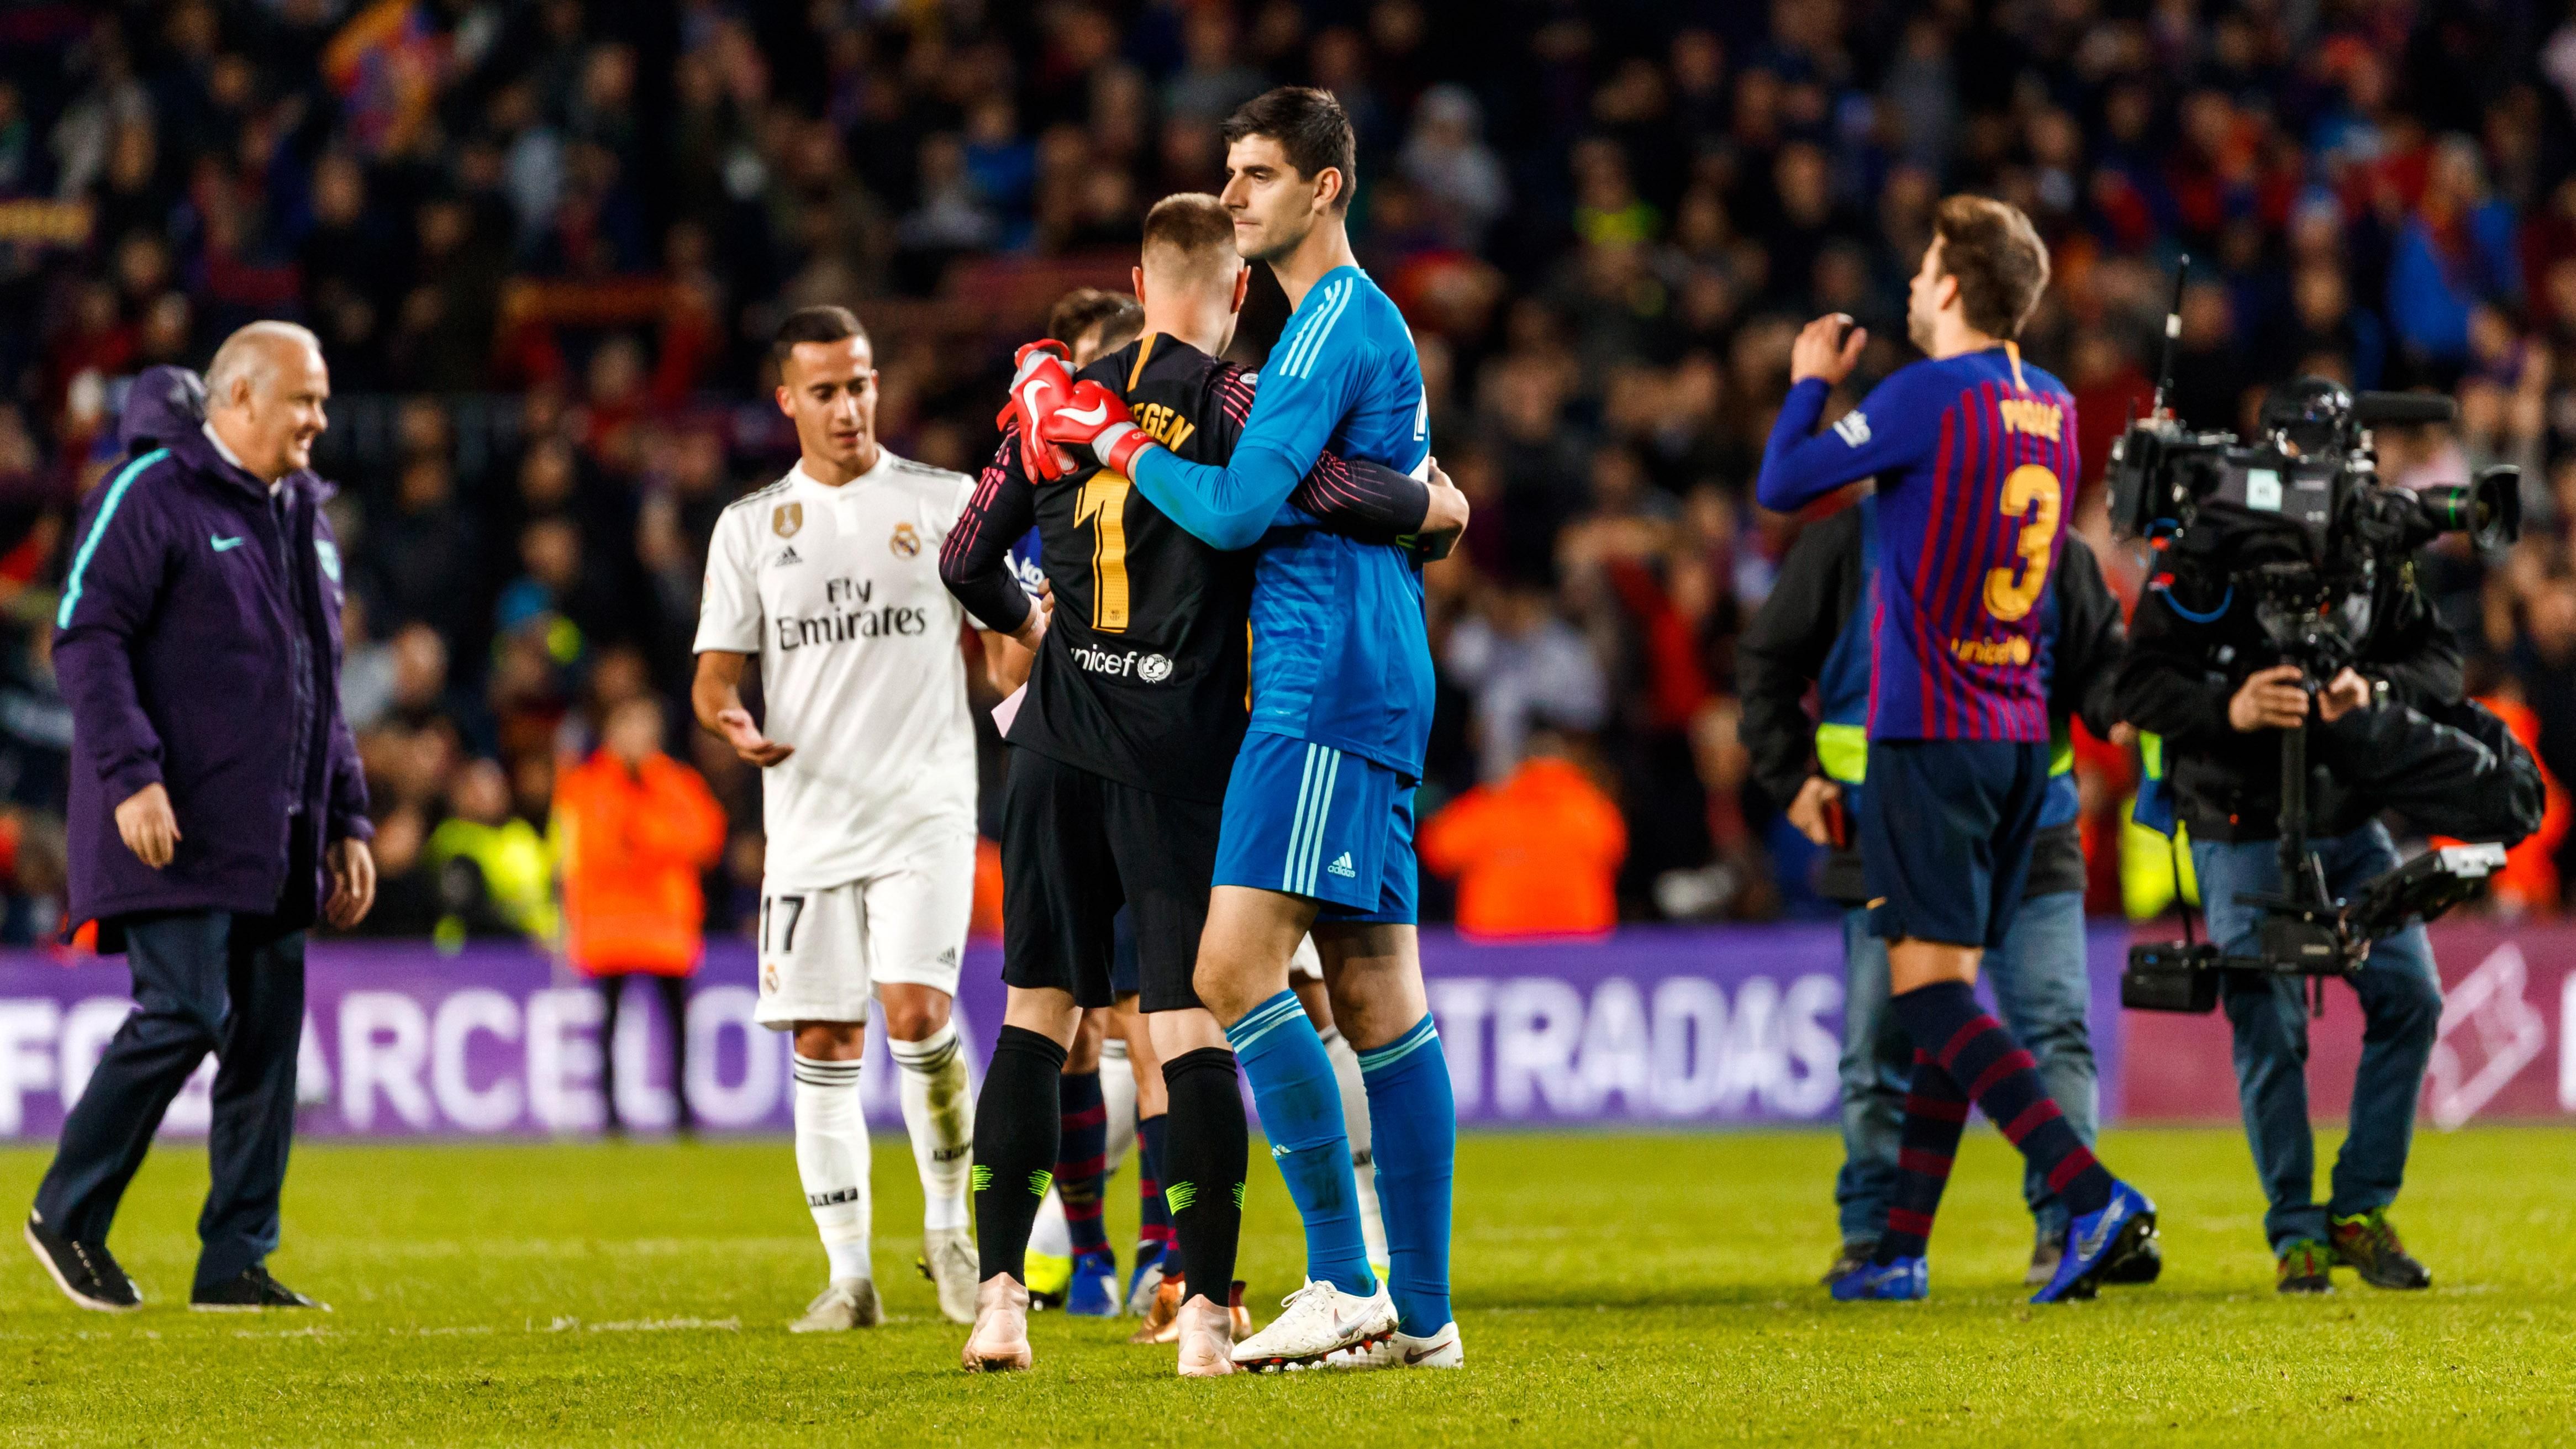 Барселона - Реал: прогноз на матч 06.02.2019 Кубок Испании 2018/2019